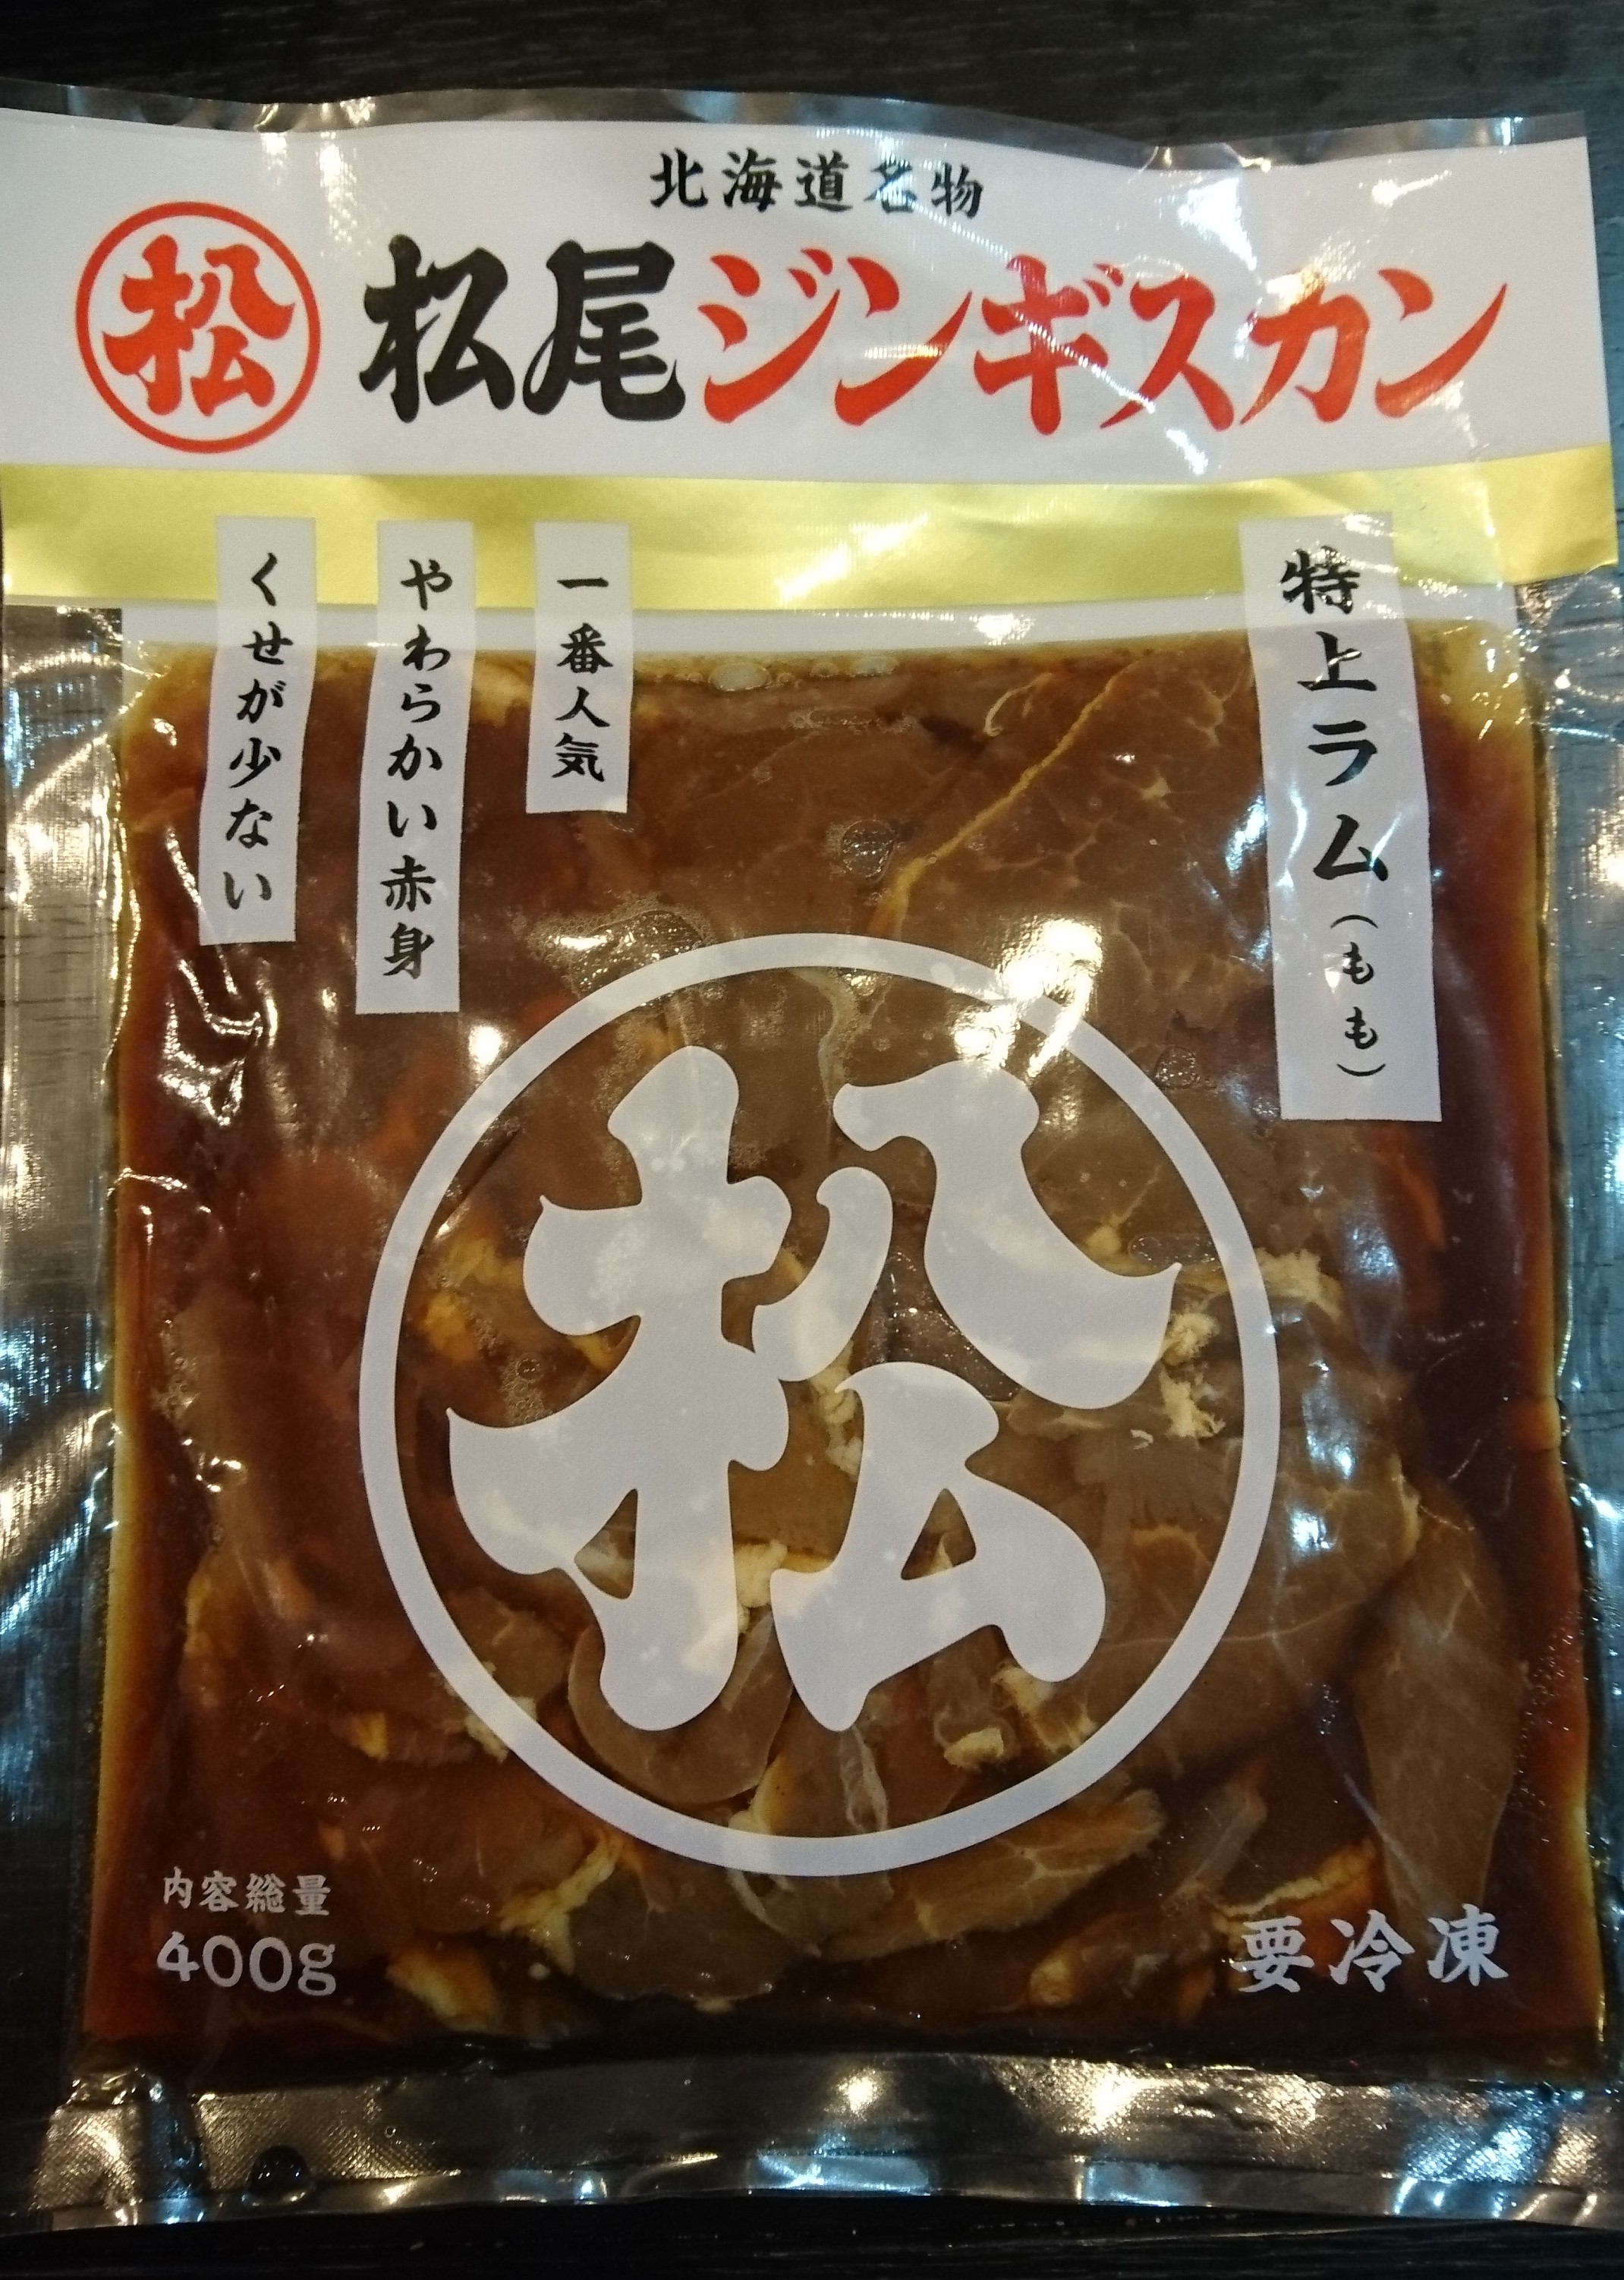 さぁ食うぞ 松尾ジンギスカンを専用鍋で美味しく食べる方法を紹介します 北海道の観光 お土産 ラーメン情報を地元32年在住の2人が発信する北海道遊食住project